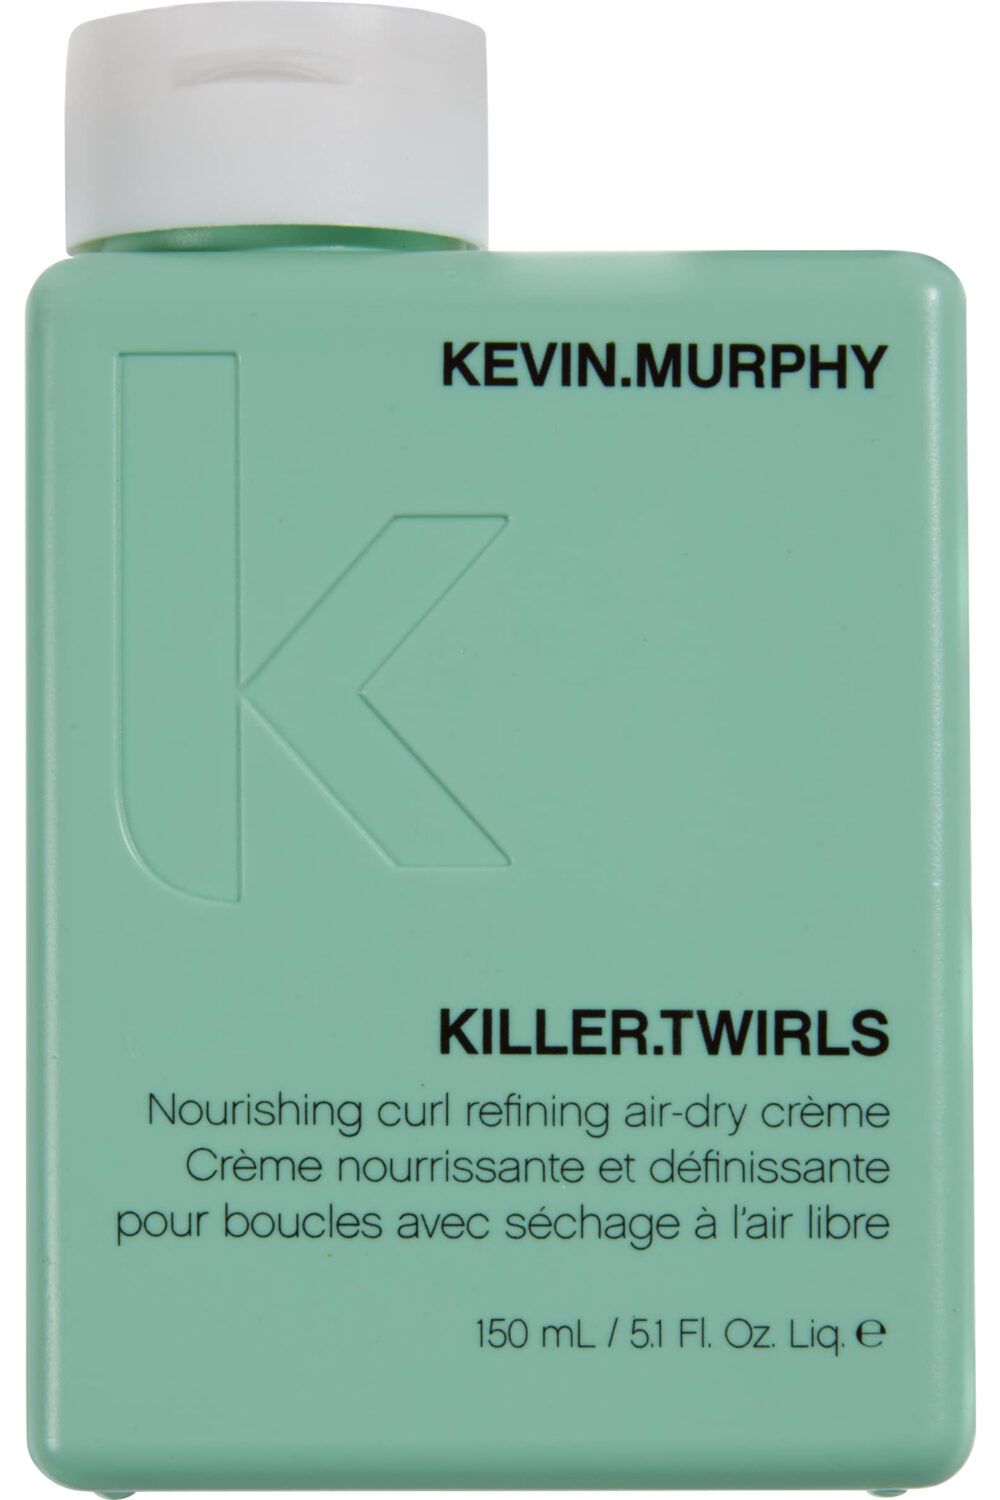 KEVIN.MURPHY - Crème nourrissante cheveux bouclés KILLER.TWIRLS